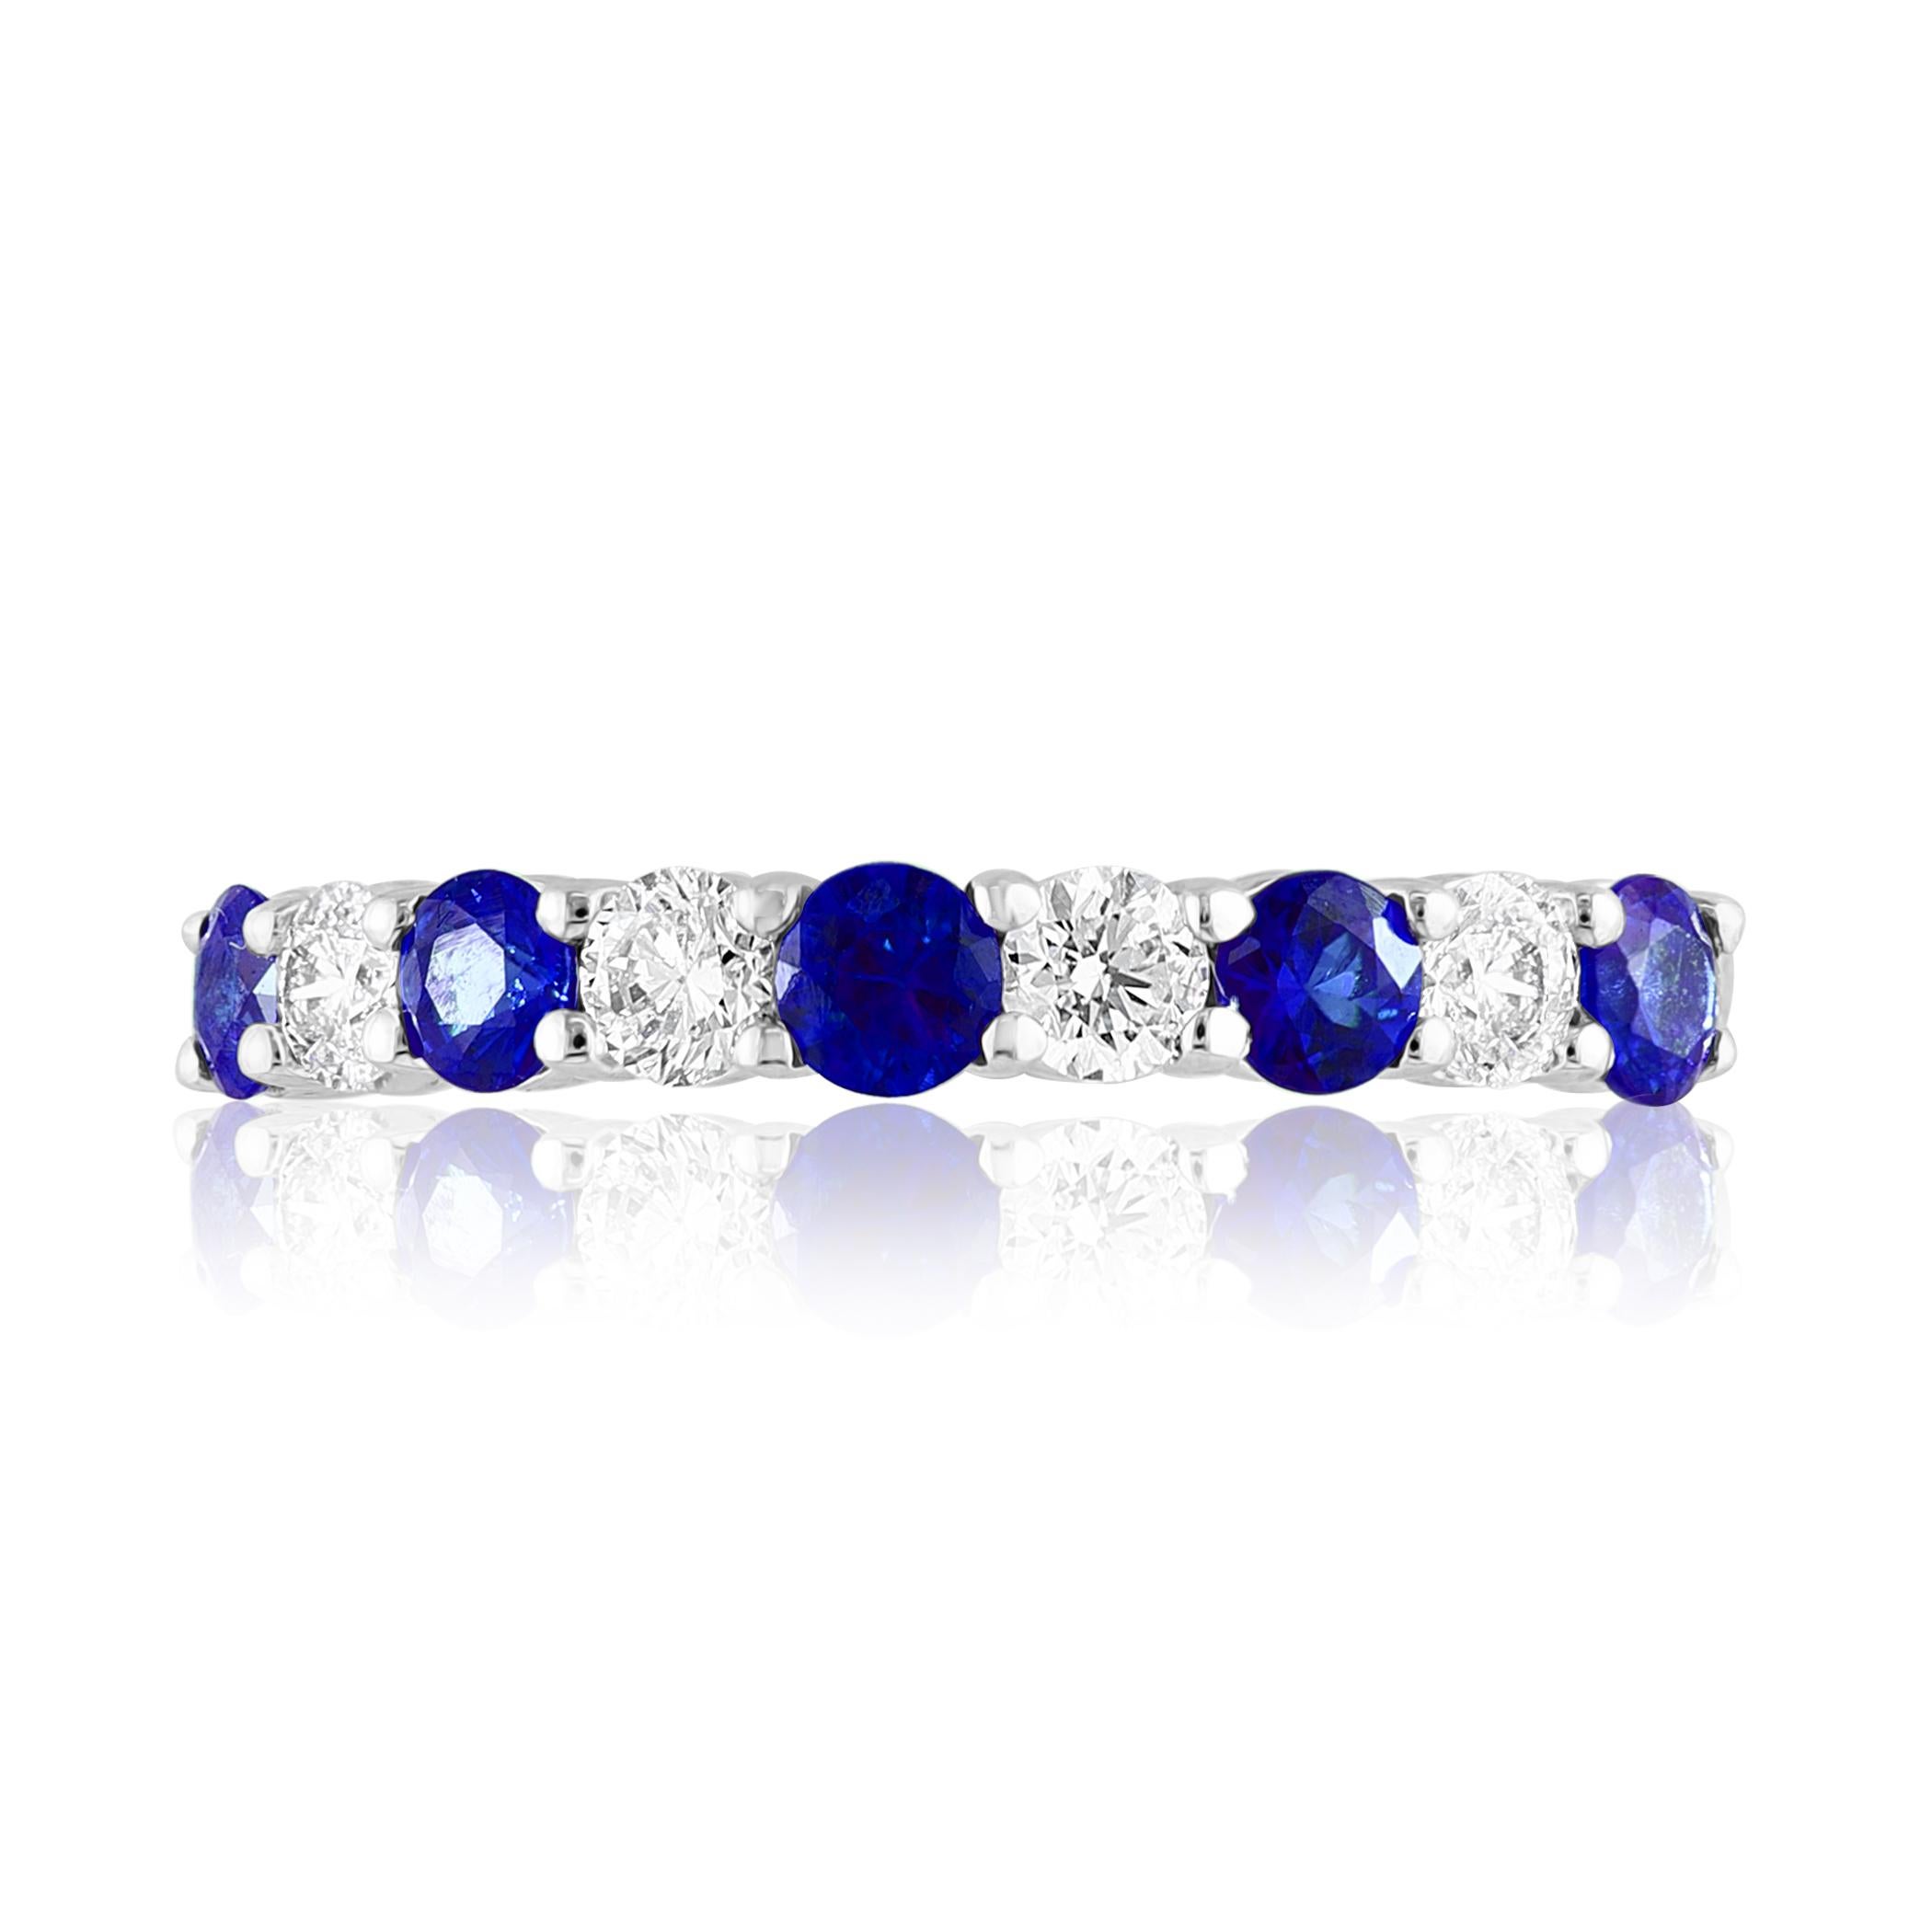 Ein modischer und klassischer Ehering, bei dem sich 4 Diamanten im Brillantschliff mit einem Gesamtgewicht von 0,37 Karat mit 5 runden blauen Saphiren mit einem Gewicht von 0,49 Karat abwechseln. Die Steine sind mit einer gemeinsamen